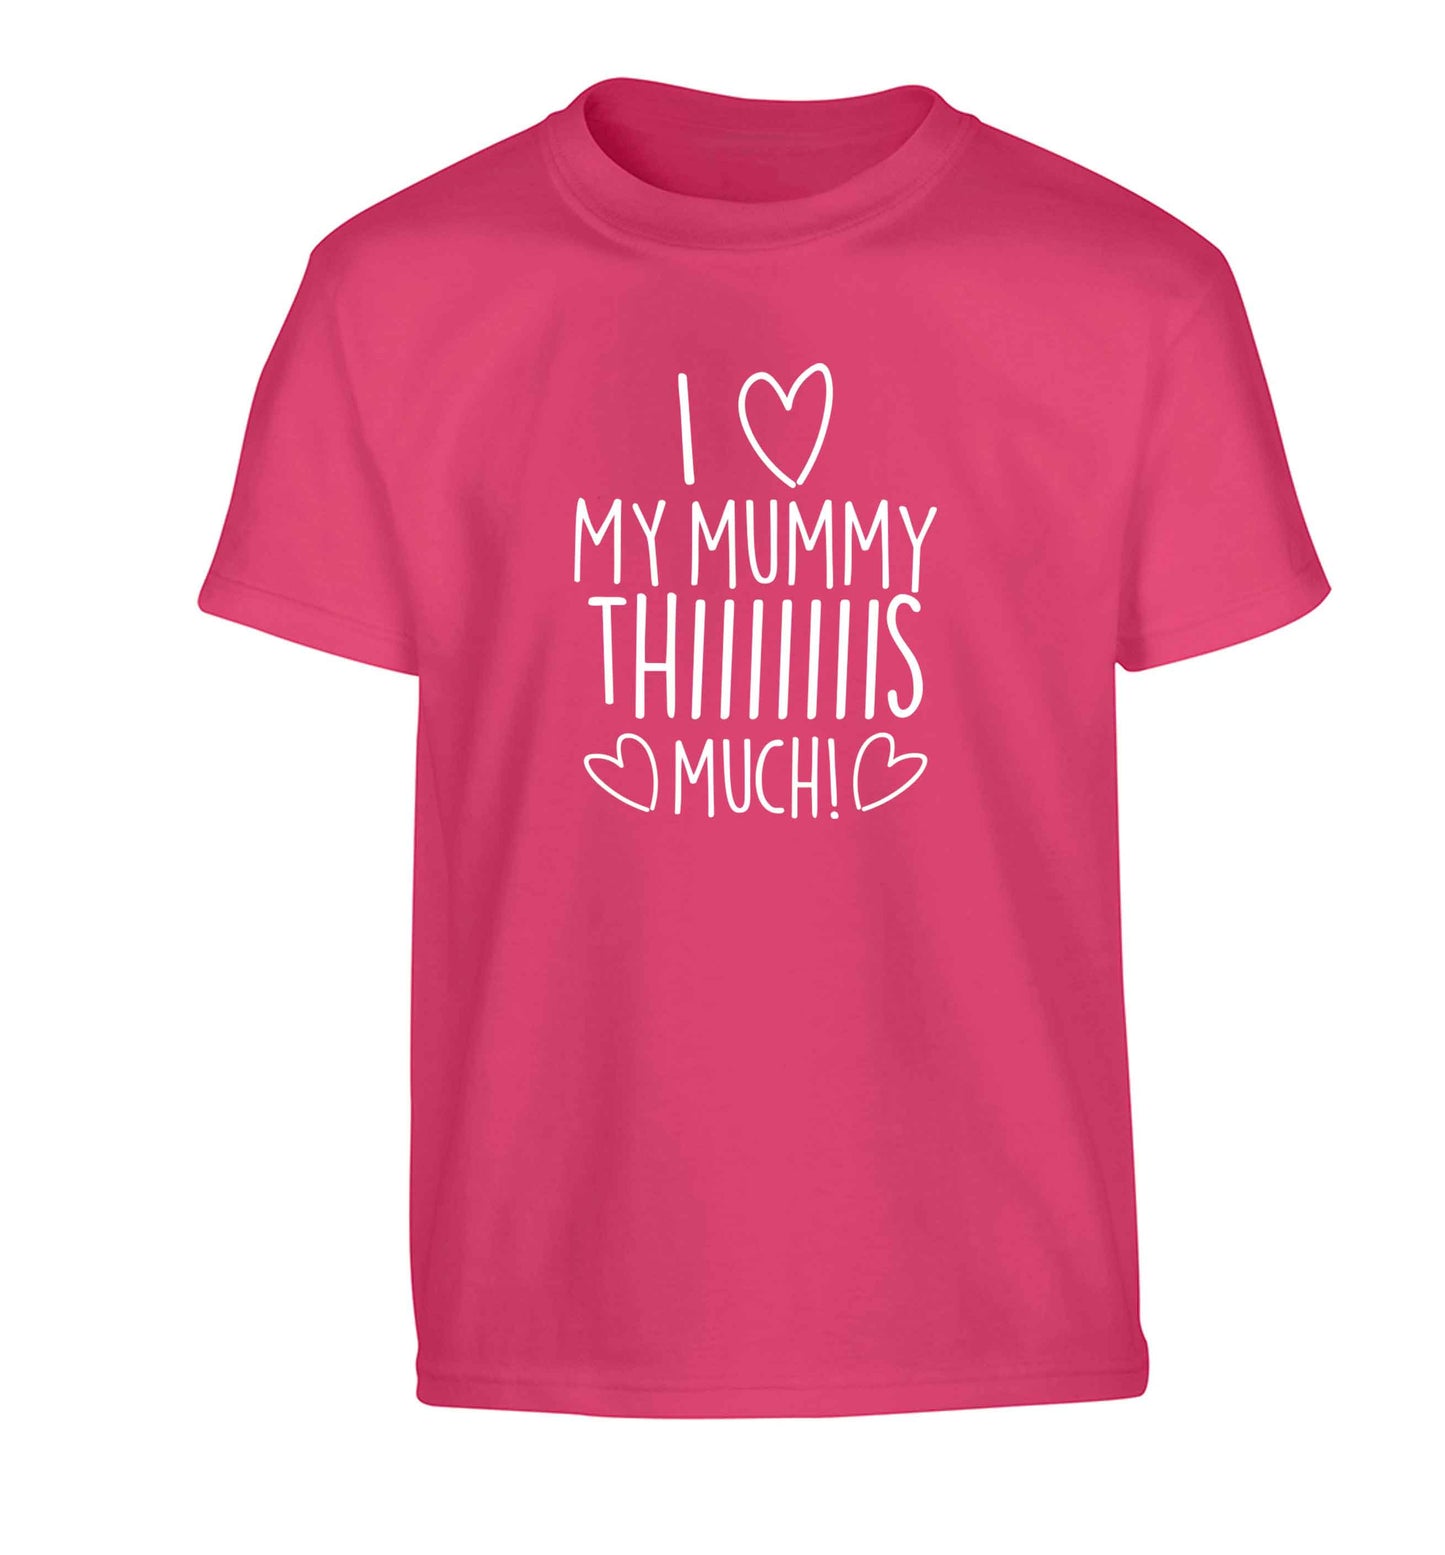 I love my mummy thiiiiis much! Children's pink Tshirt 12-13 Years